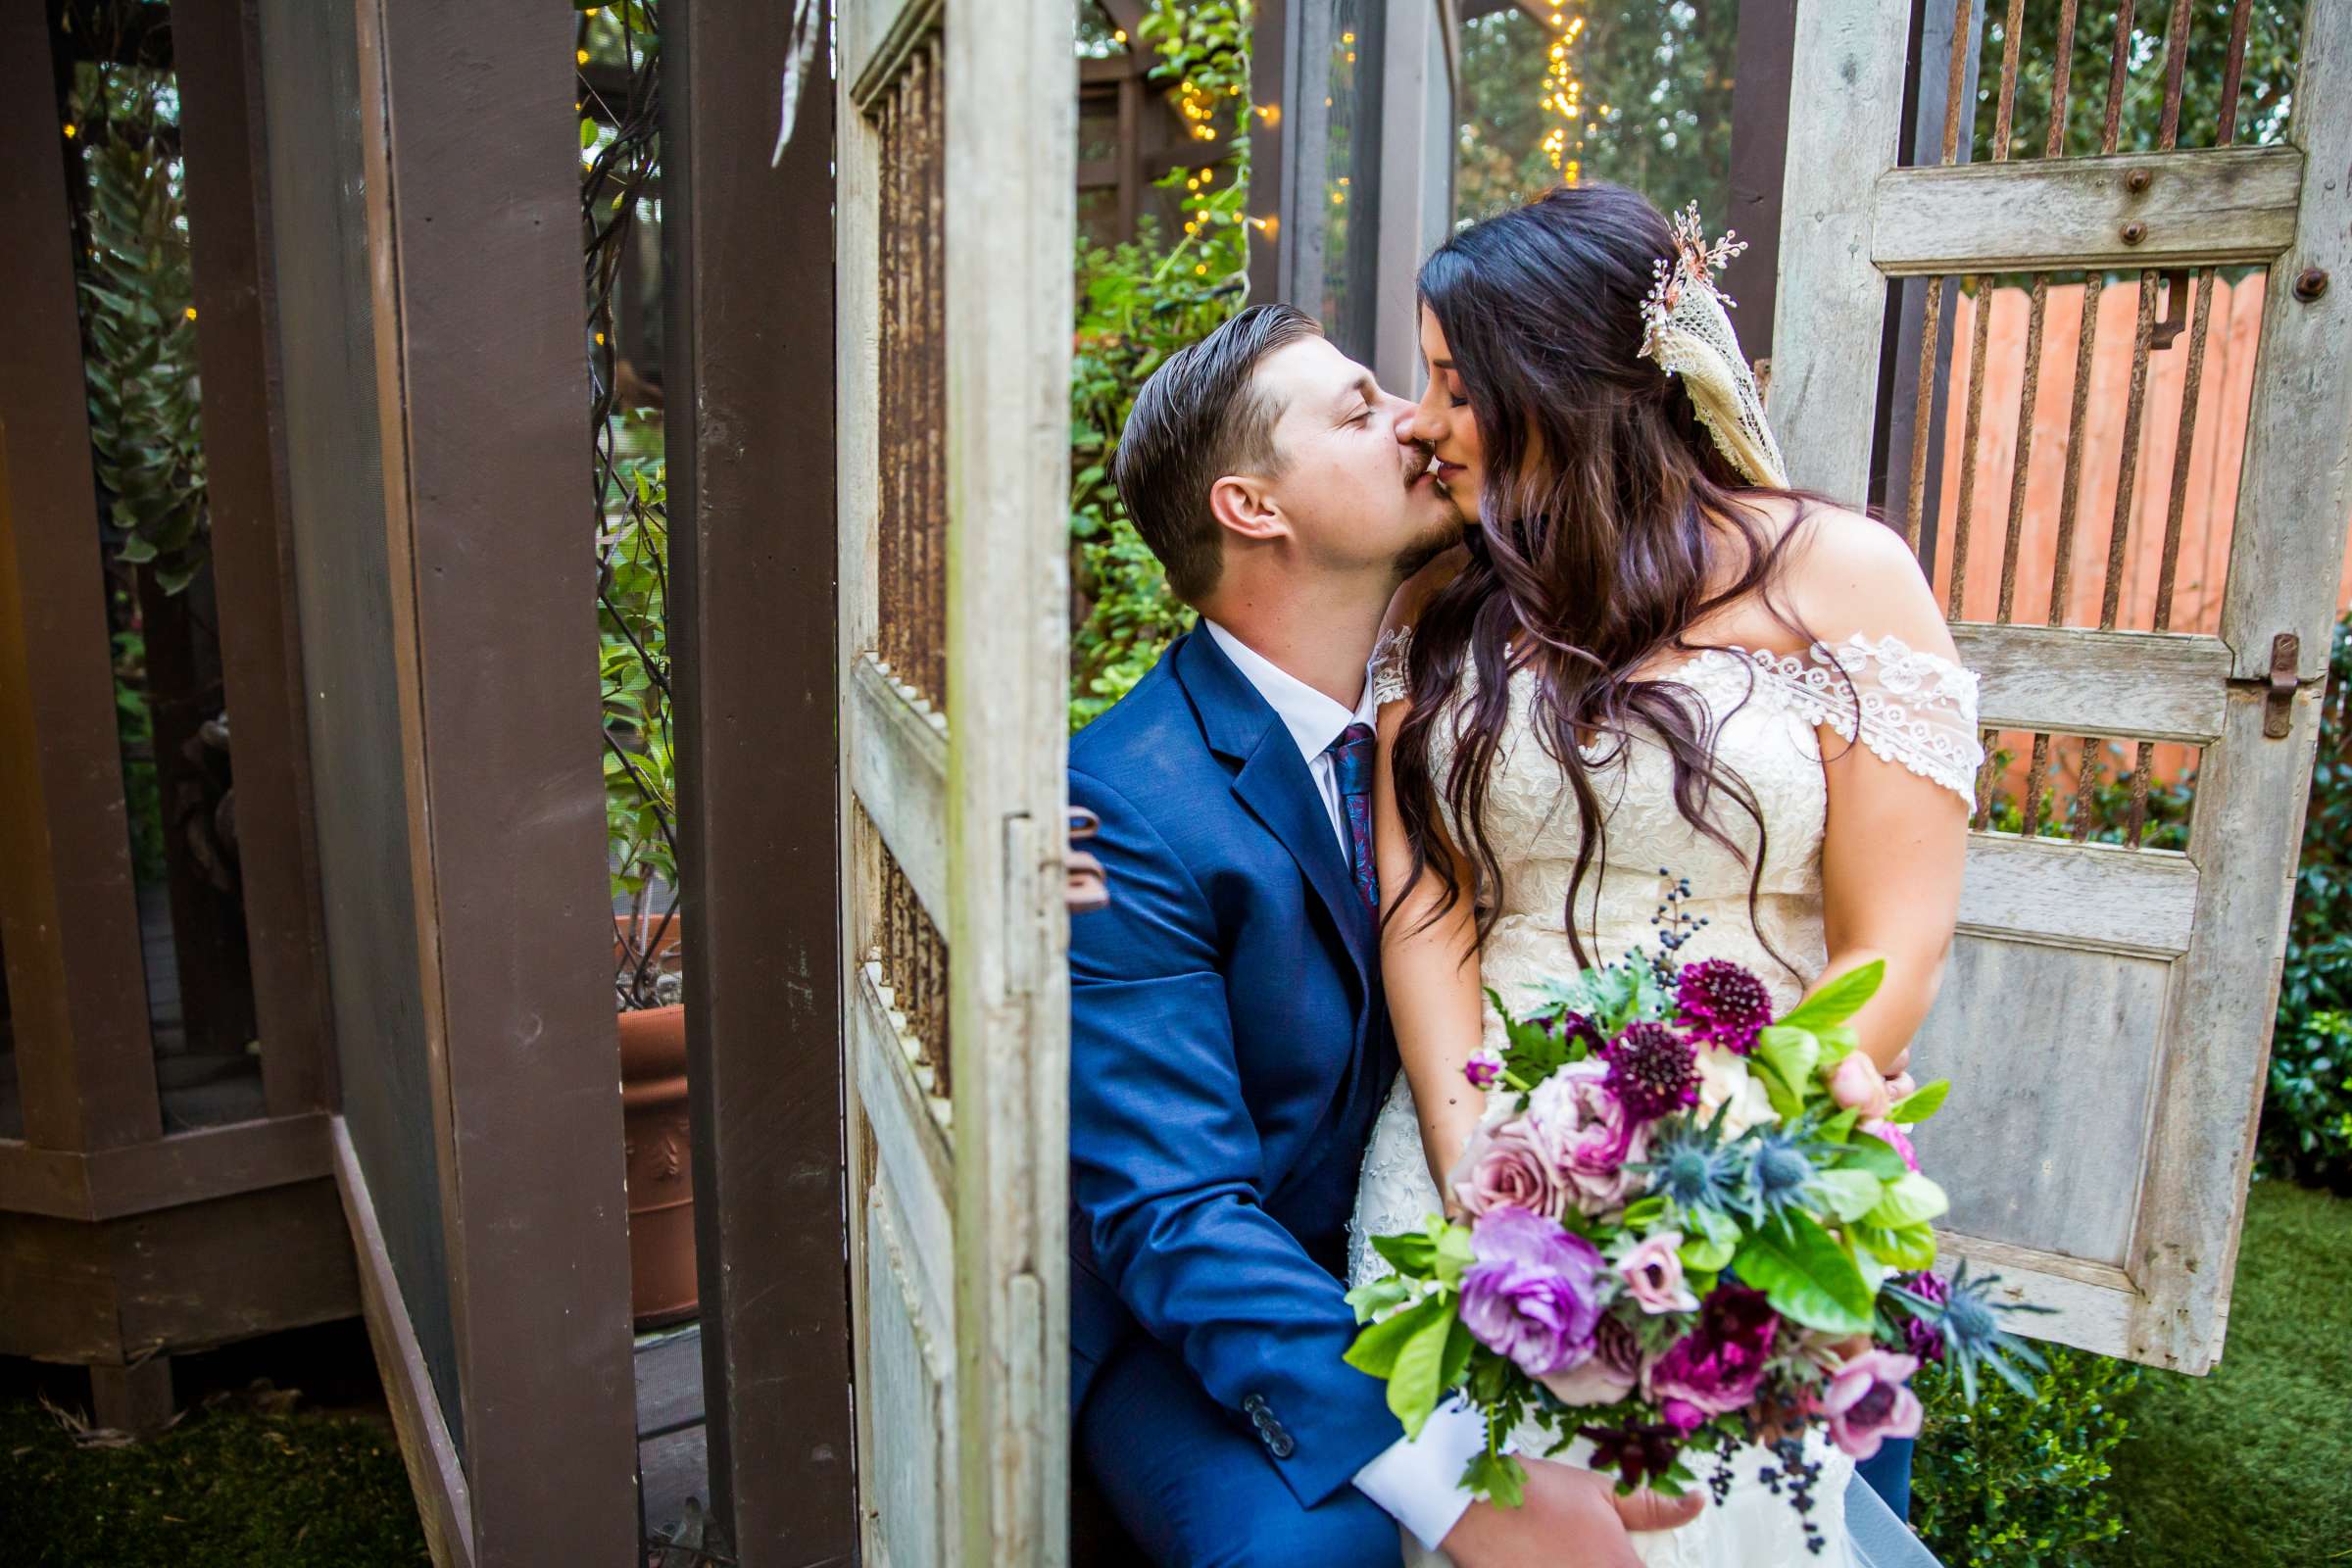 Twin Oaks House & Gardens Wedding Estate Wedding, Stephanie and Ilija Wedding Photo #6 by True Photography